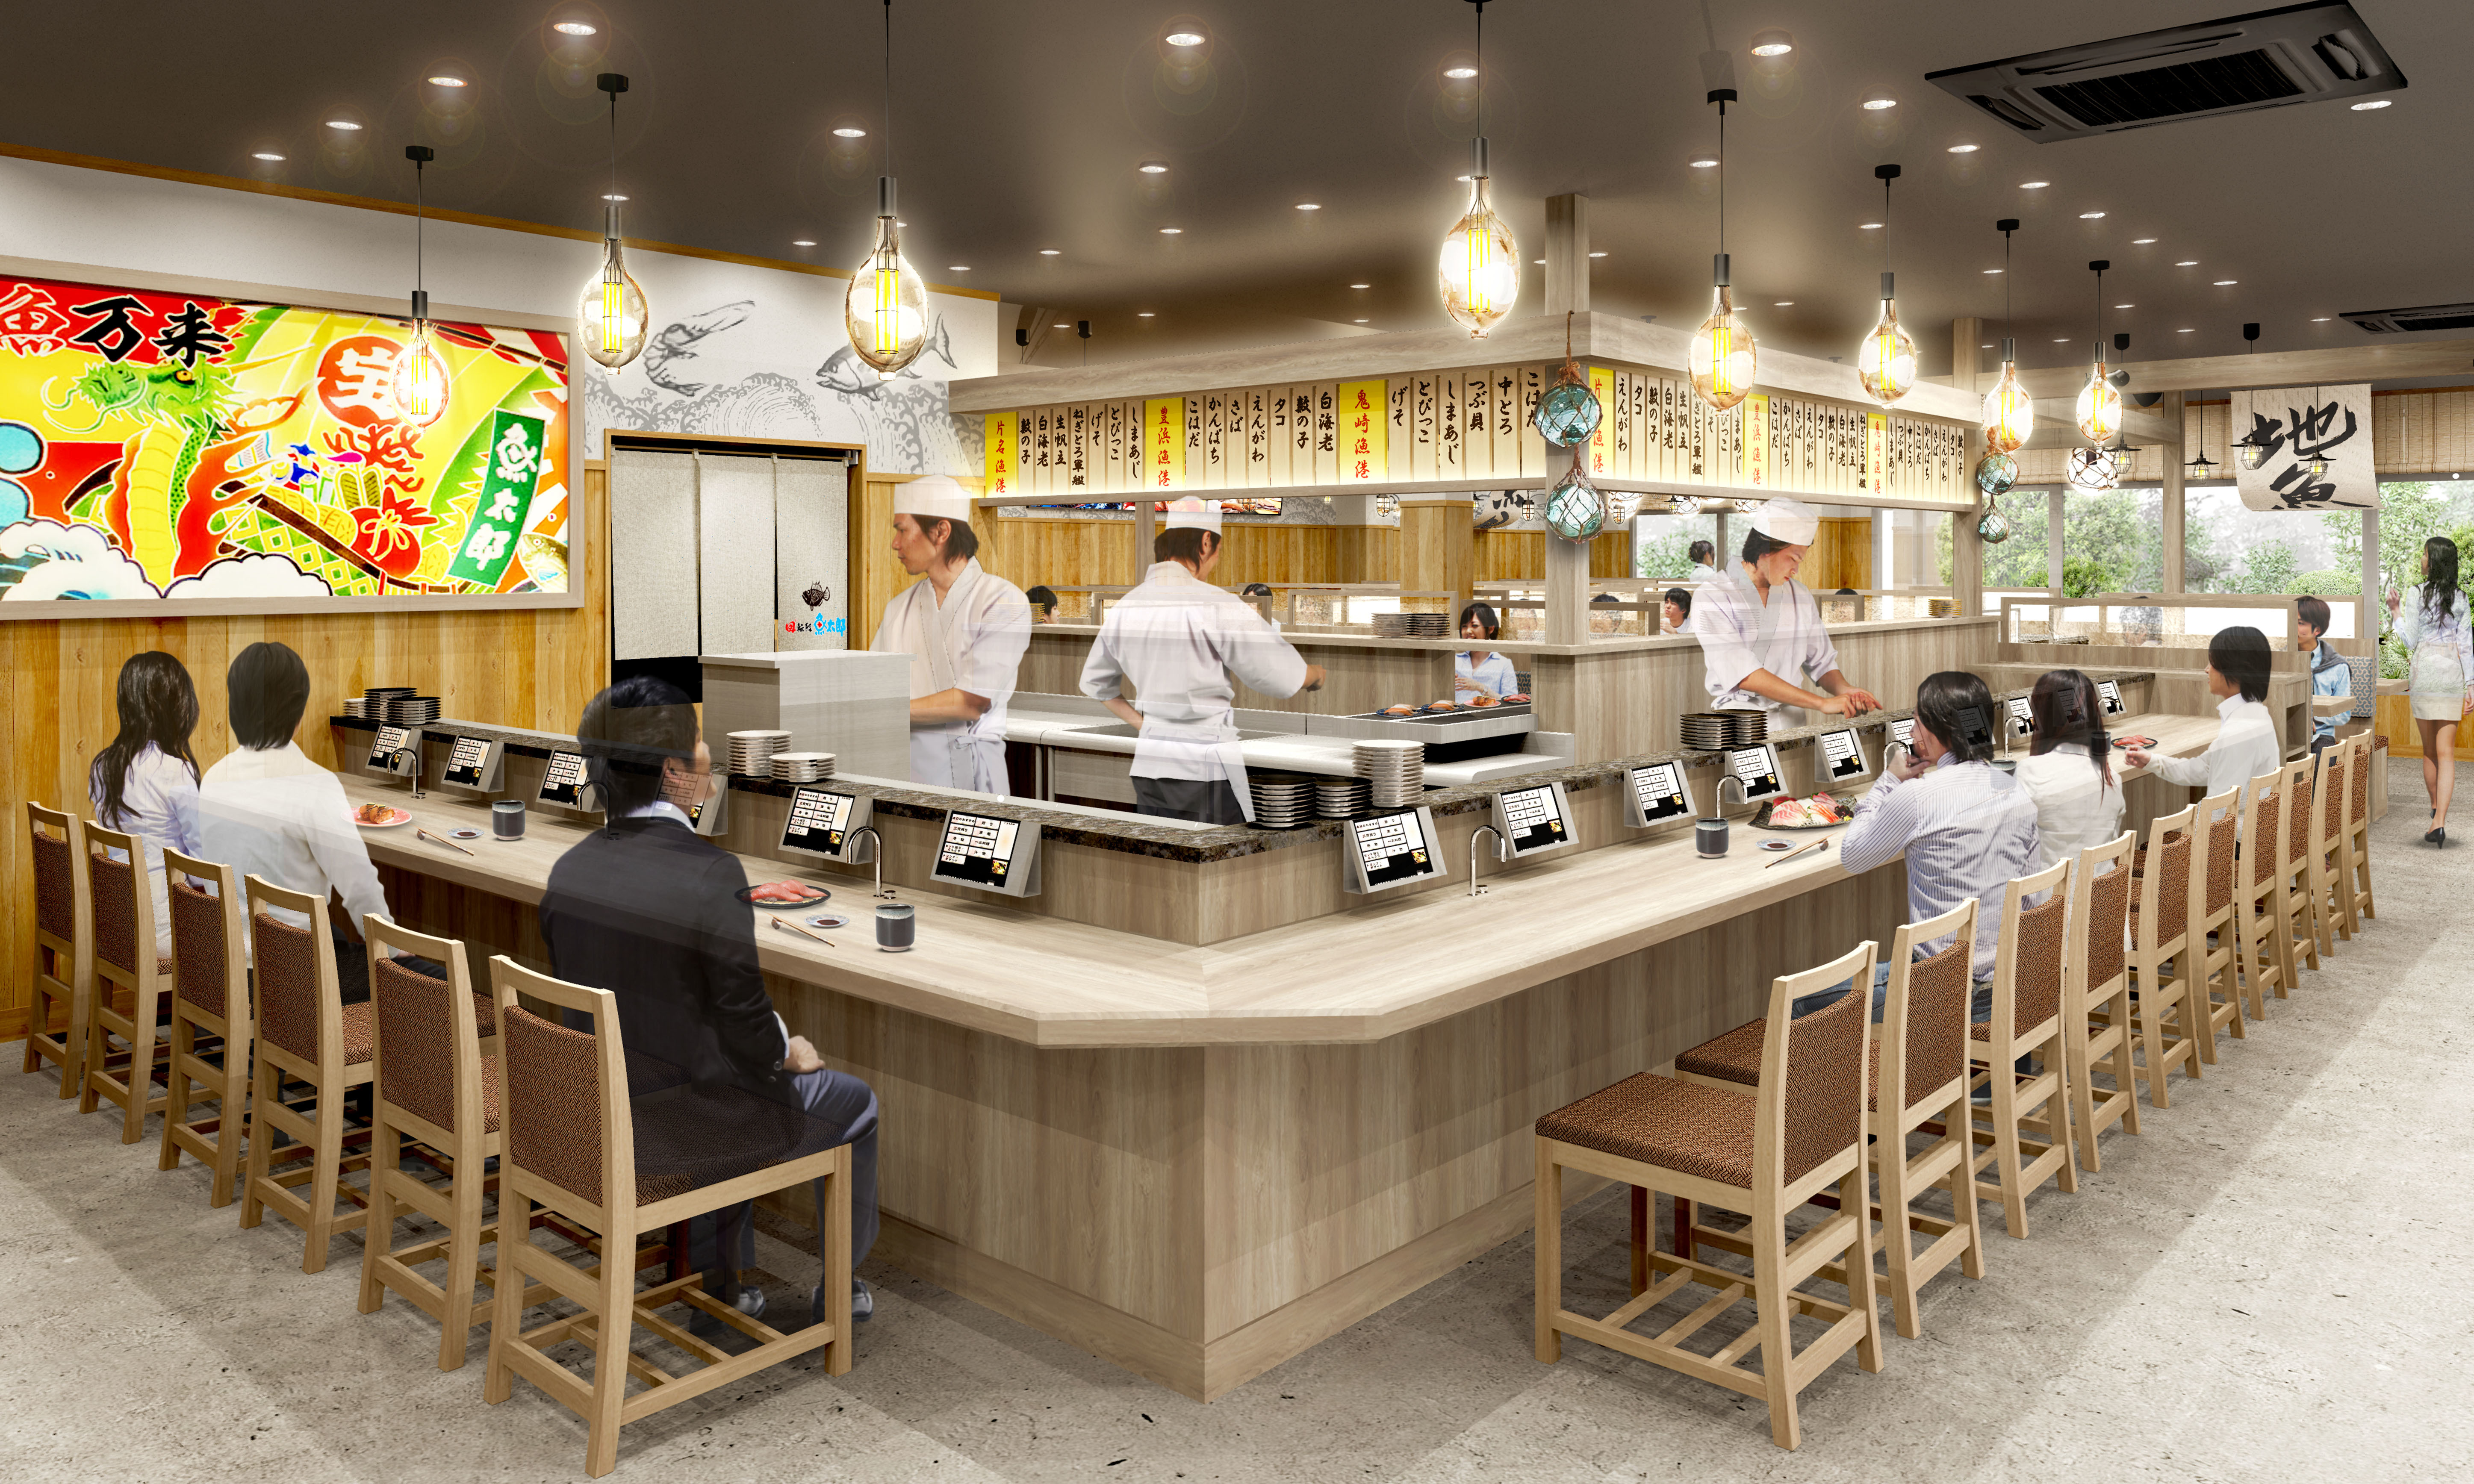 知る・見る・食べるの体験を提供する新事業
「回転鮨 魚太郎 半田店」4月24日にオープン